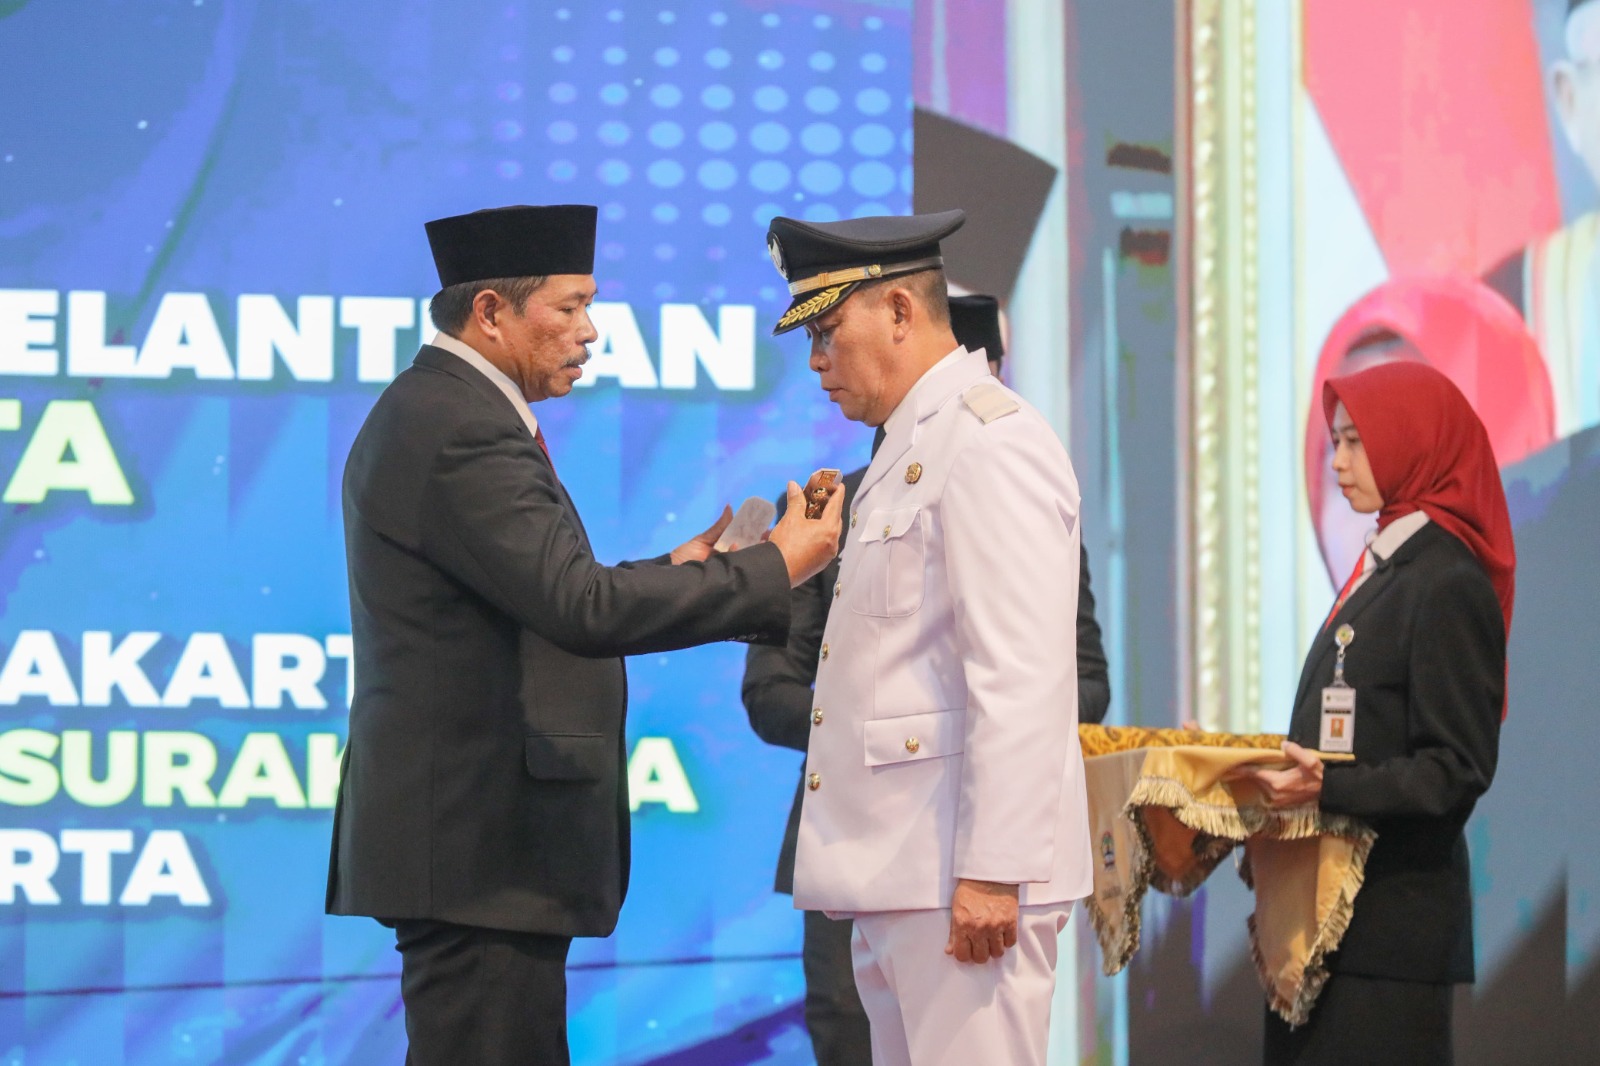 Gantikan Gibran Rakabuming Raka, Pj Gubernur Jateng Lantik Teguh Prakosa Jadi Wali Kota Surakarta   